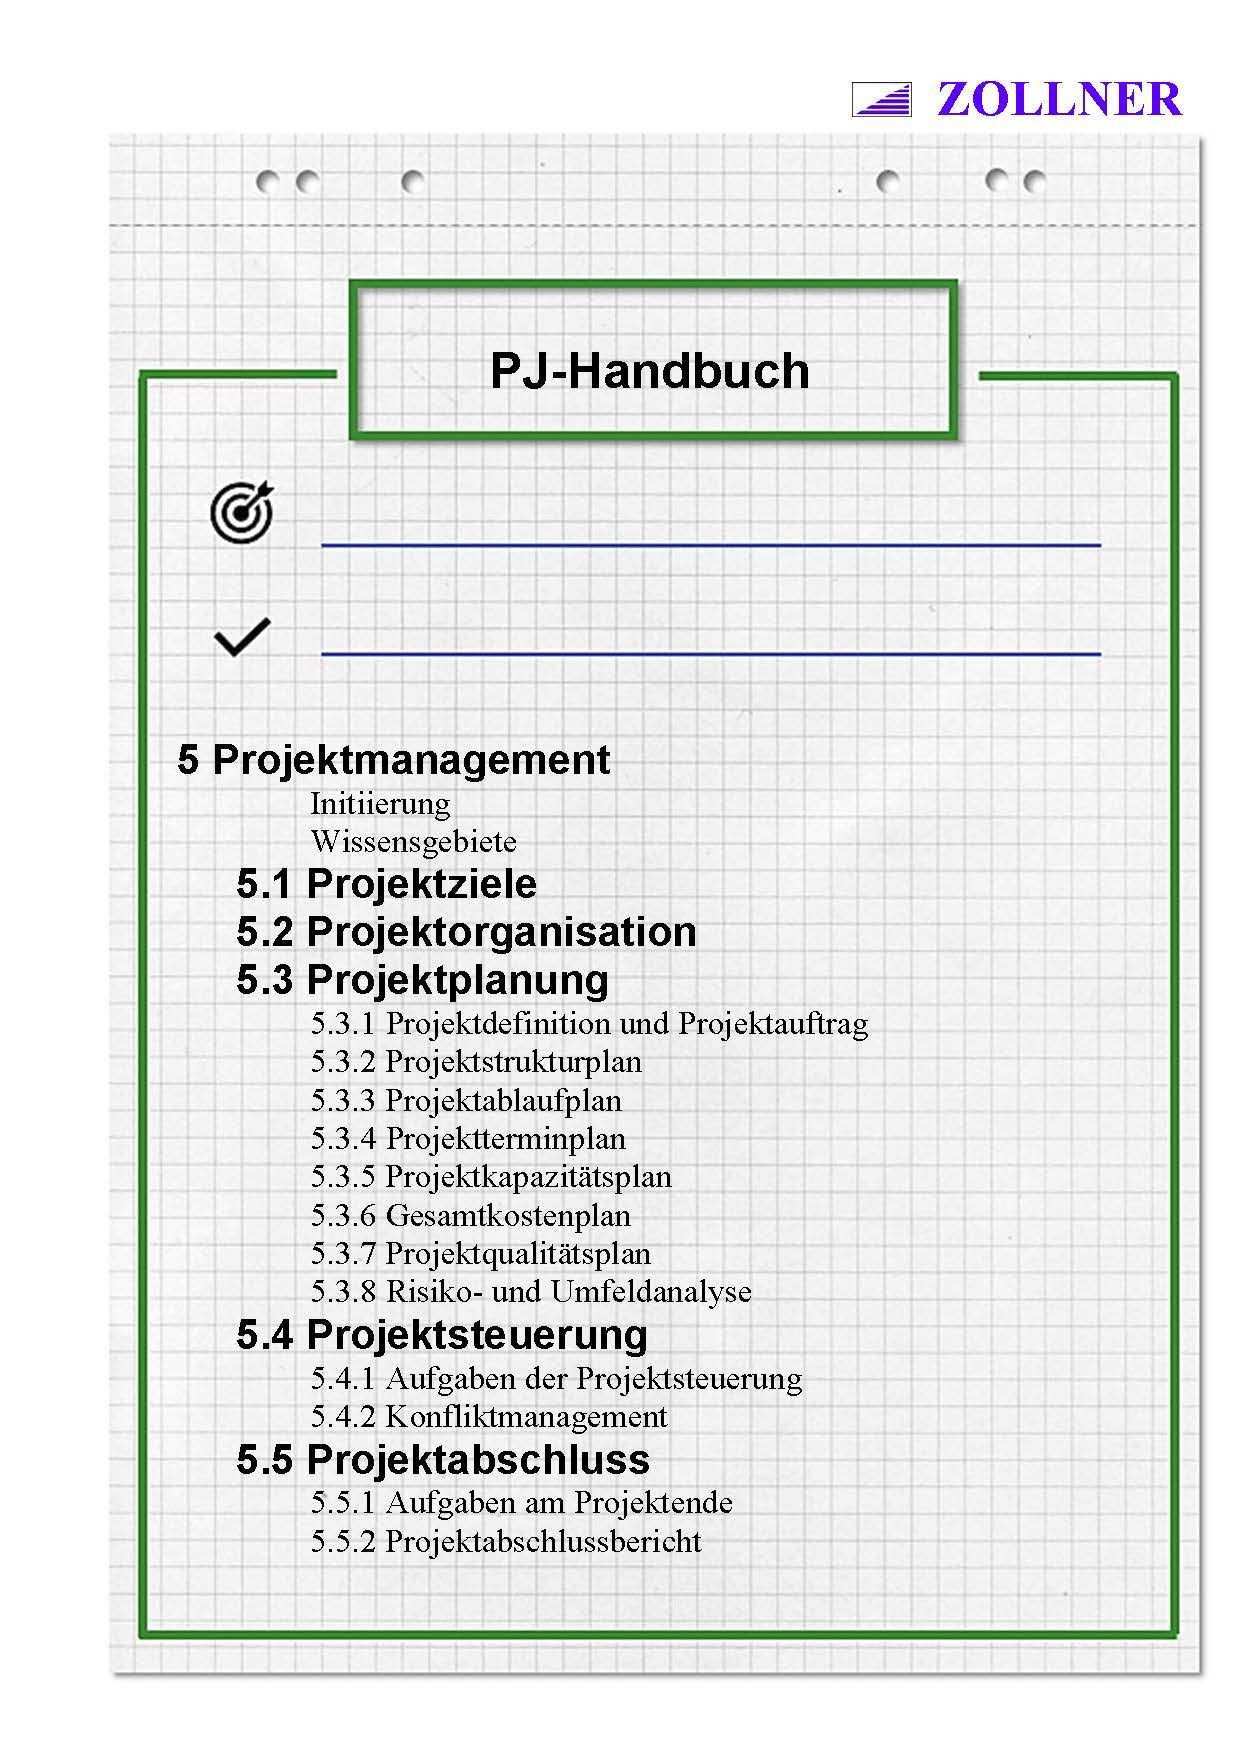 Industriemeister Mik Projektmanagement Handbuch Wolfgang Zollner Projektmanagement Marketing Und Vertrieb Projekt Planung